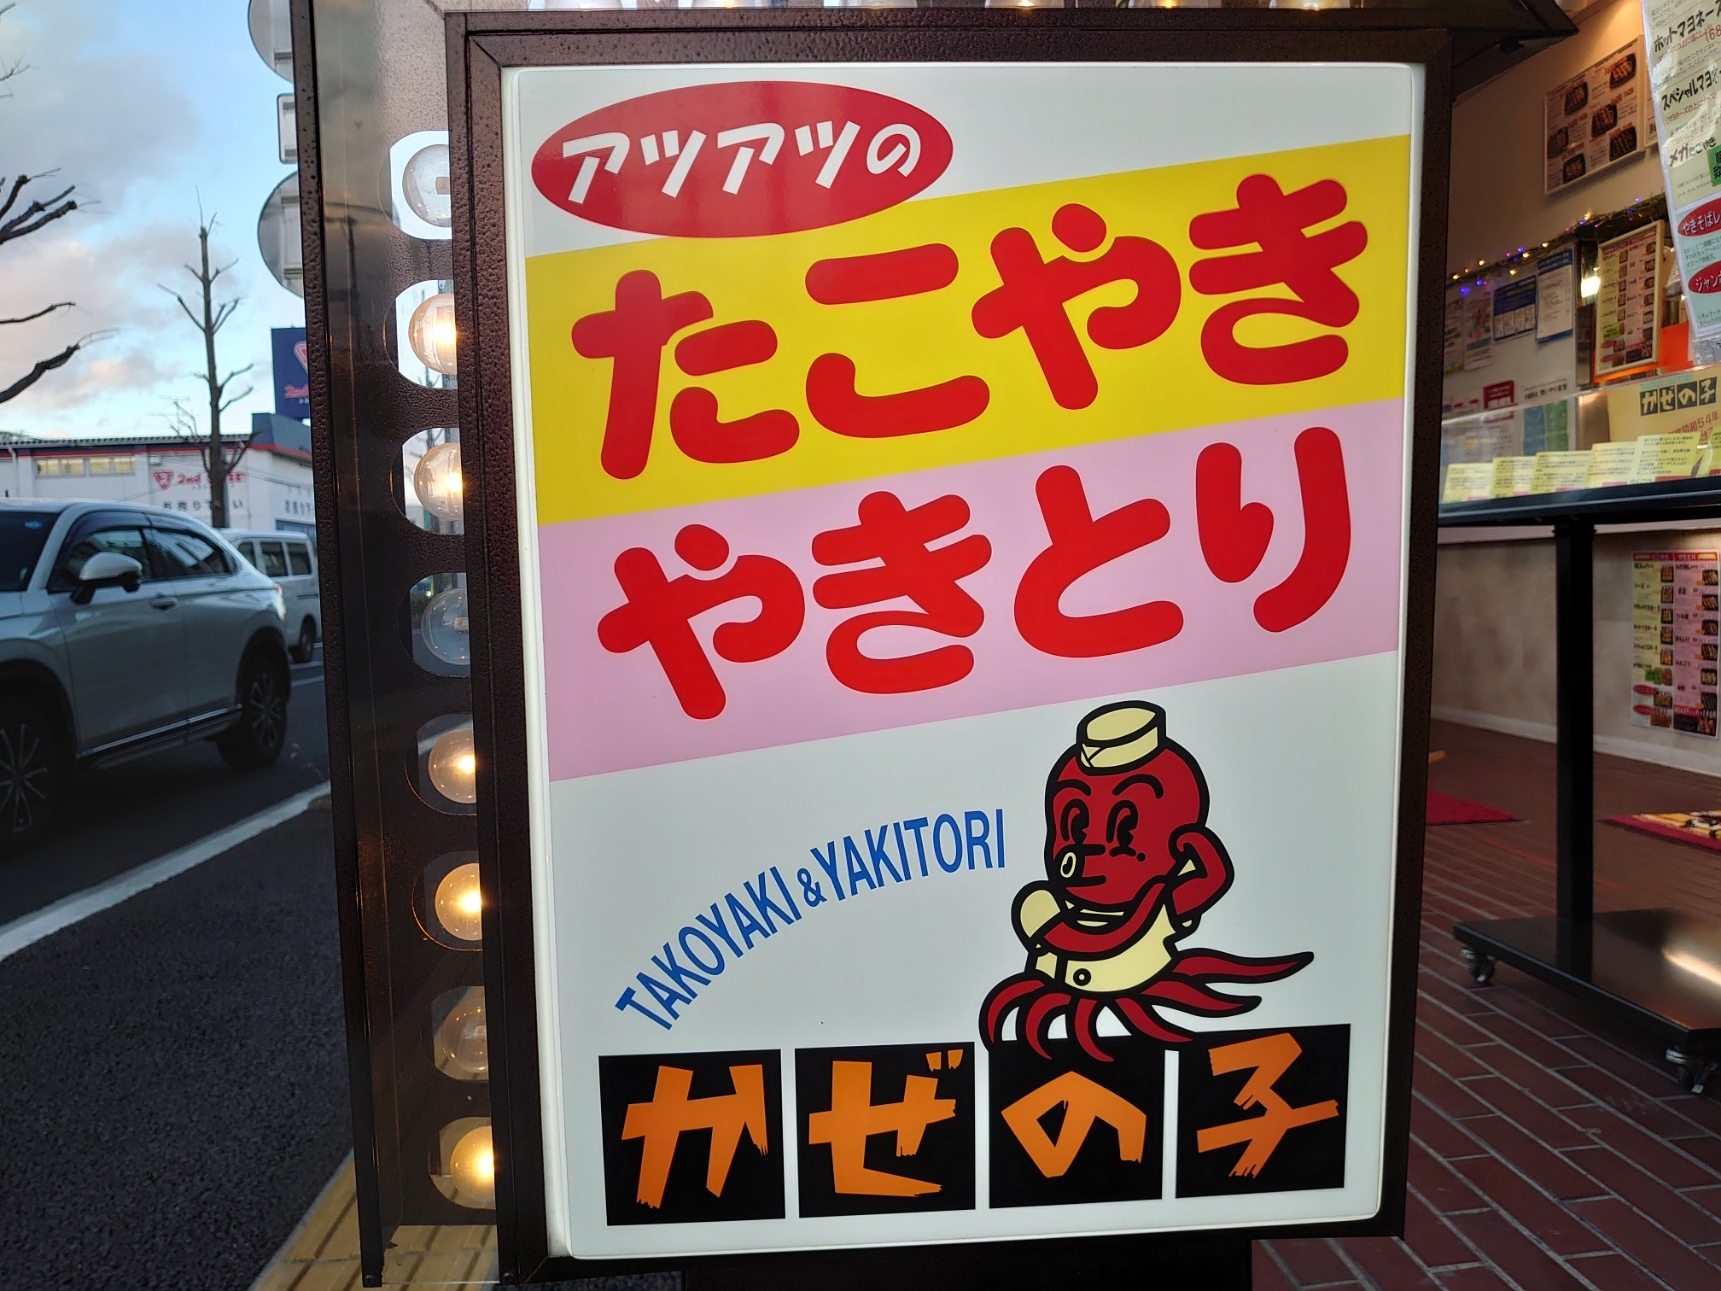 タコが可愛い「TAKOYAKI&YAKITORIかぜの子」看板